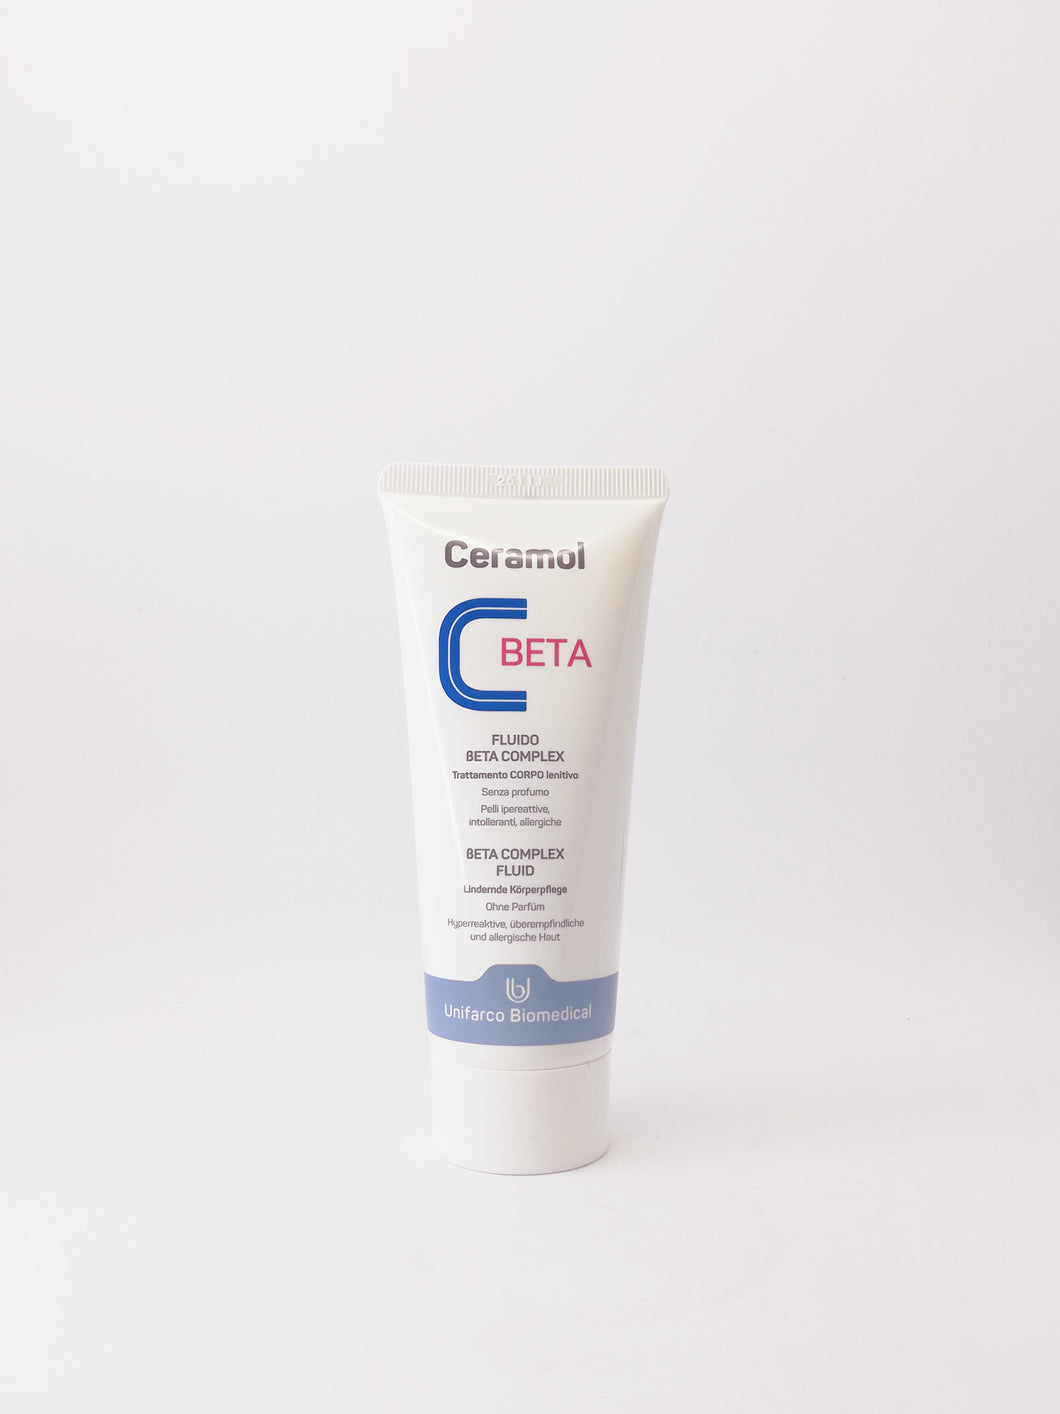 Ceramol Beta Complex Fluid – Intensiv lindernde Körperpflege bei hyperreaktiver, überempfindlicher und allergischer Haut. Erhältlich im Shop der Helios Apotheke Klosters.